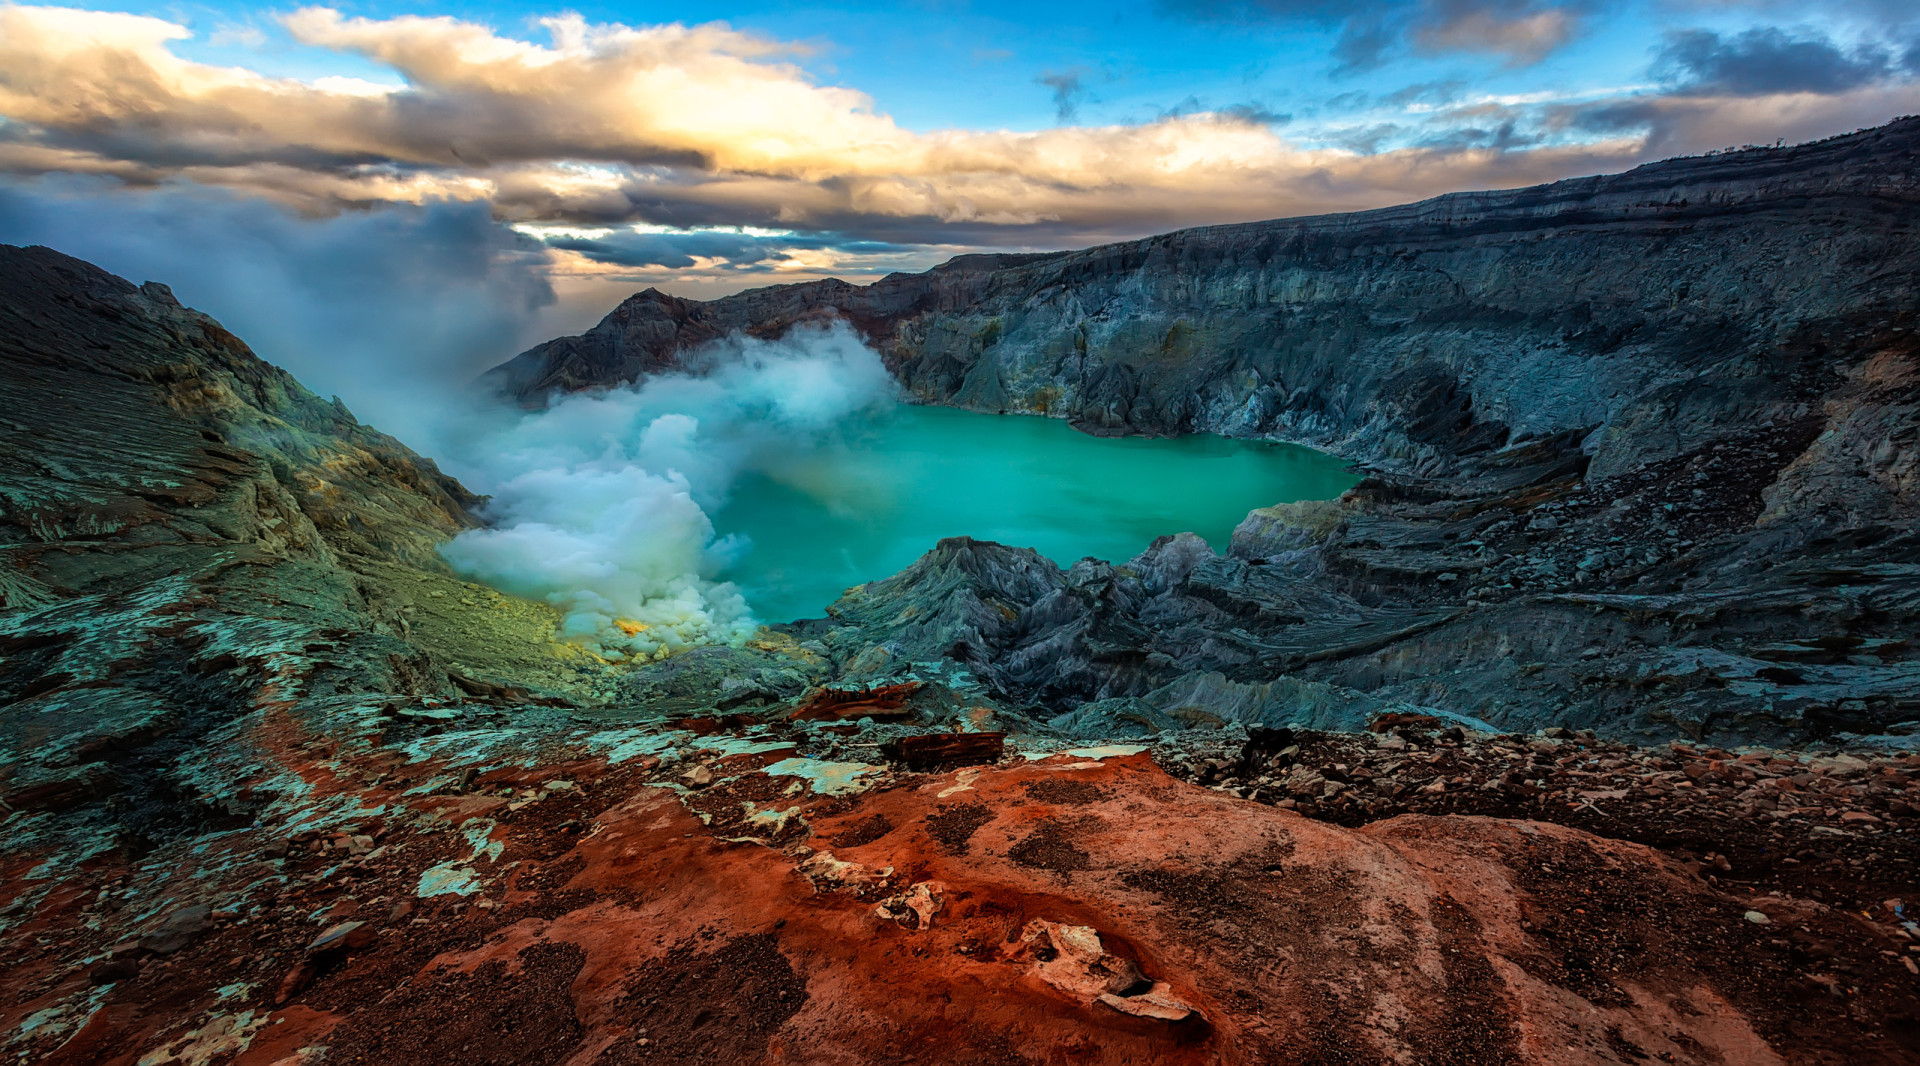 <p>L'Ijen est un volcan d'Indonésie situé sur l'île de Java. Un lac de couleur turquoise s'est formé dans son cratère acide. Faites une randonnée nocturne jusqu'au bord du cratère et vous pourrez assister aux célèbres flammes bleu électrique d'Ijen, allumées par du gaz sulfurique et atteignant jusqu'à 5 m de hauteur.</p>